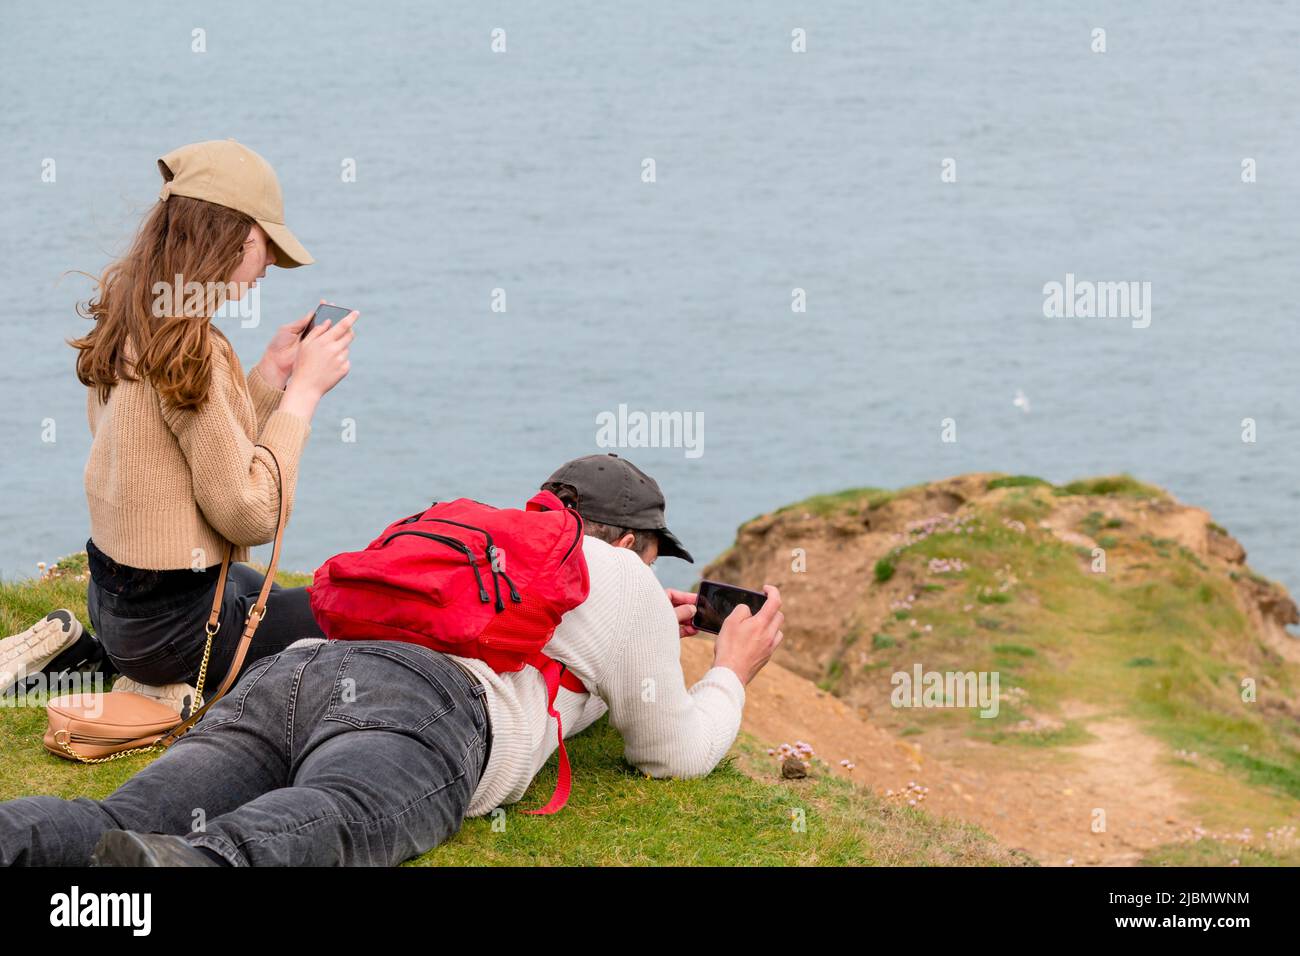 Padre e hija observando aves y fotografiando la naturaleza, tumbados en la cima de los acantilados costeros Foto de stock